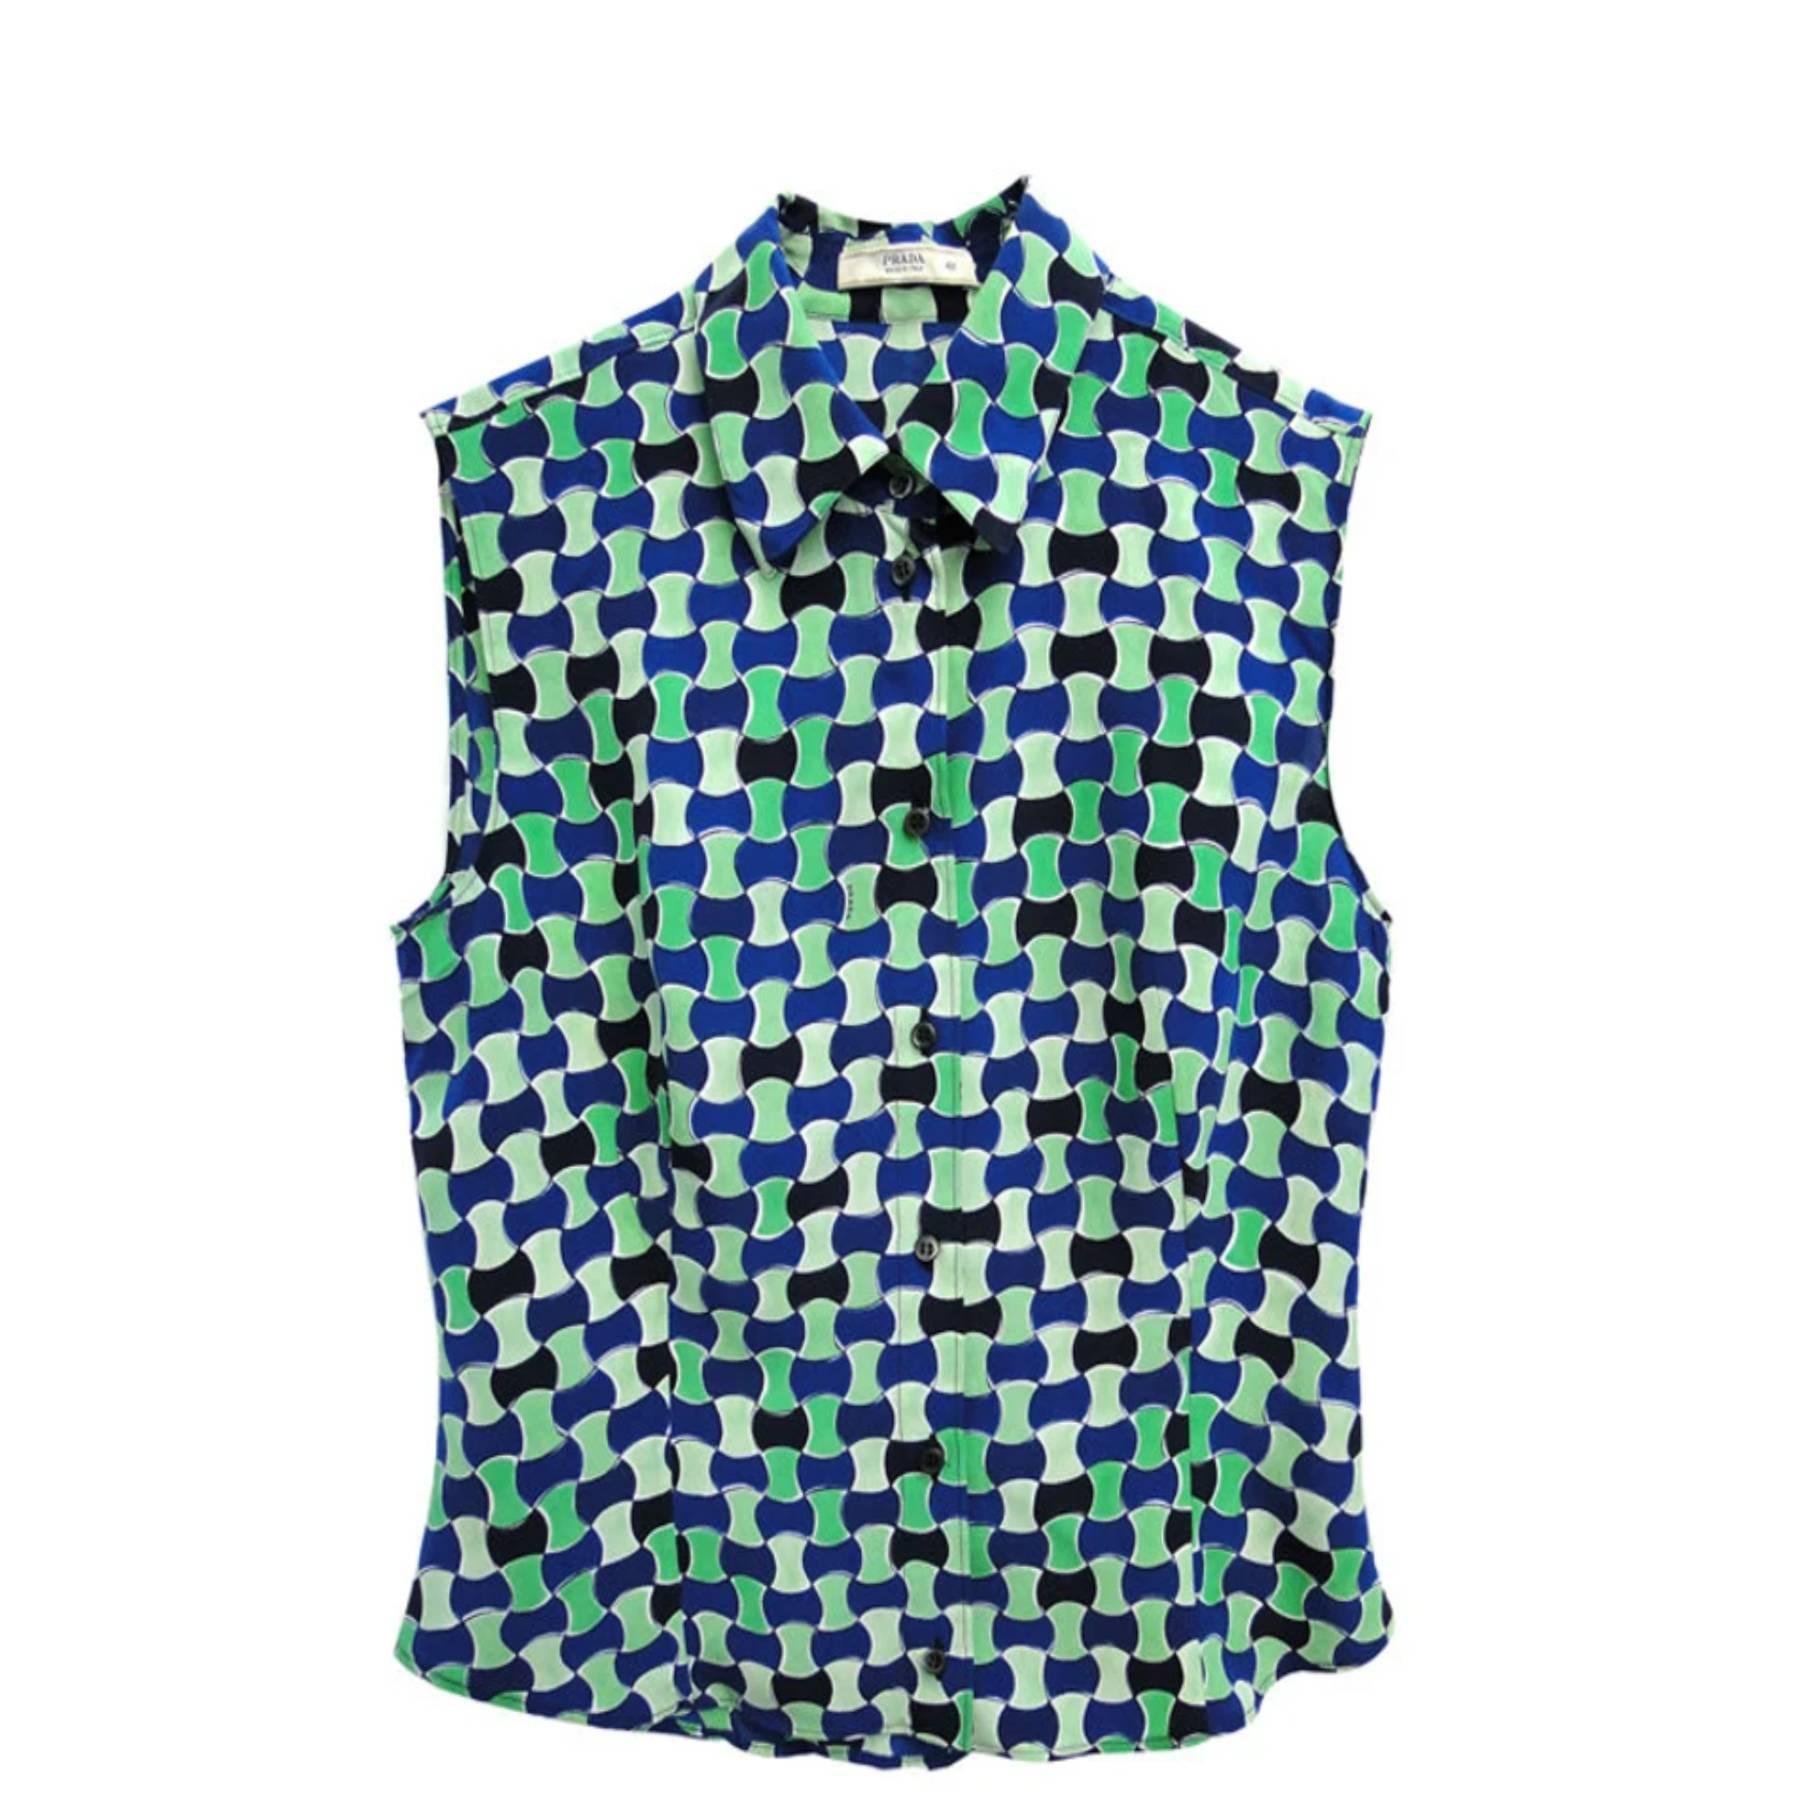 Prada ärmelloses Seidenhemd mit geometrischem Muster
blau, grün und weißer Druck
frontaler Knopfverschluss
Ende der 90er Jahre in ausgezeichnetem Zustand
Größe: mittel 42 (IT) - 4/6 (US) - 10 (UK)
Hergestellt in Italien